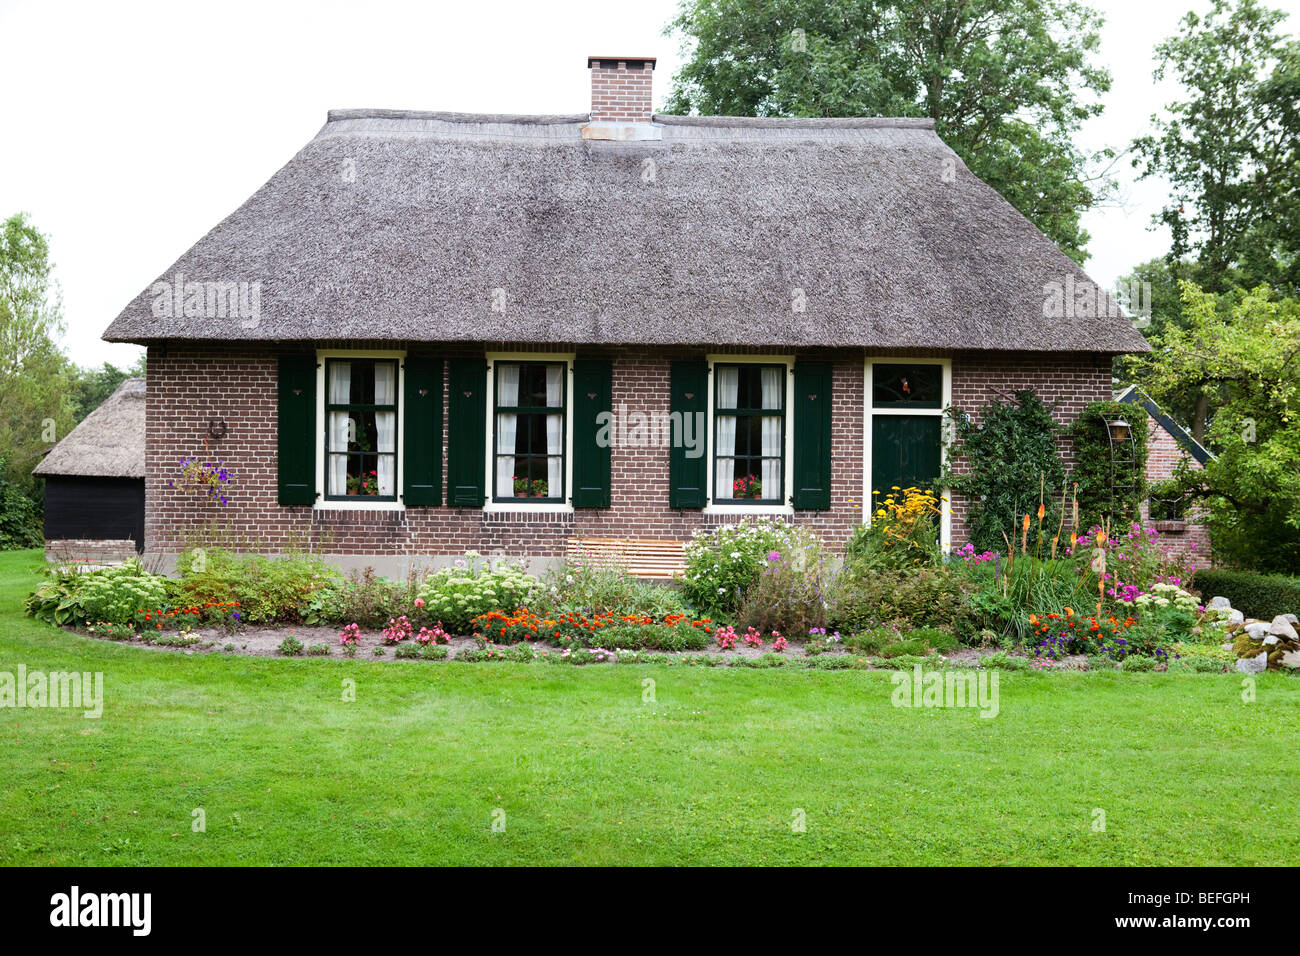 Traditionelles Dorf mit roten Ziegeln Häuser und Grachten: Giethoorn, Niederlande. Stockfoto